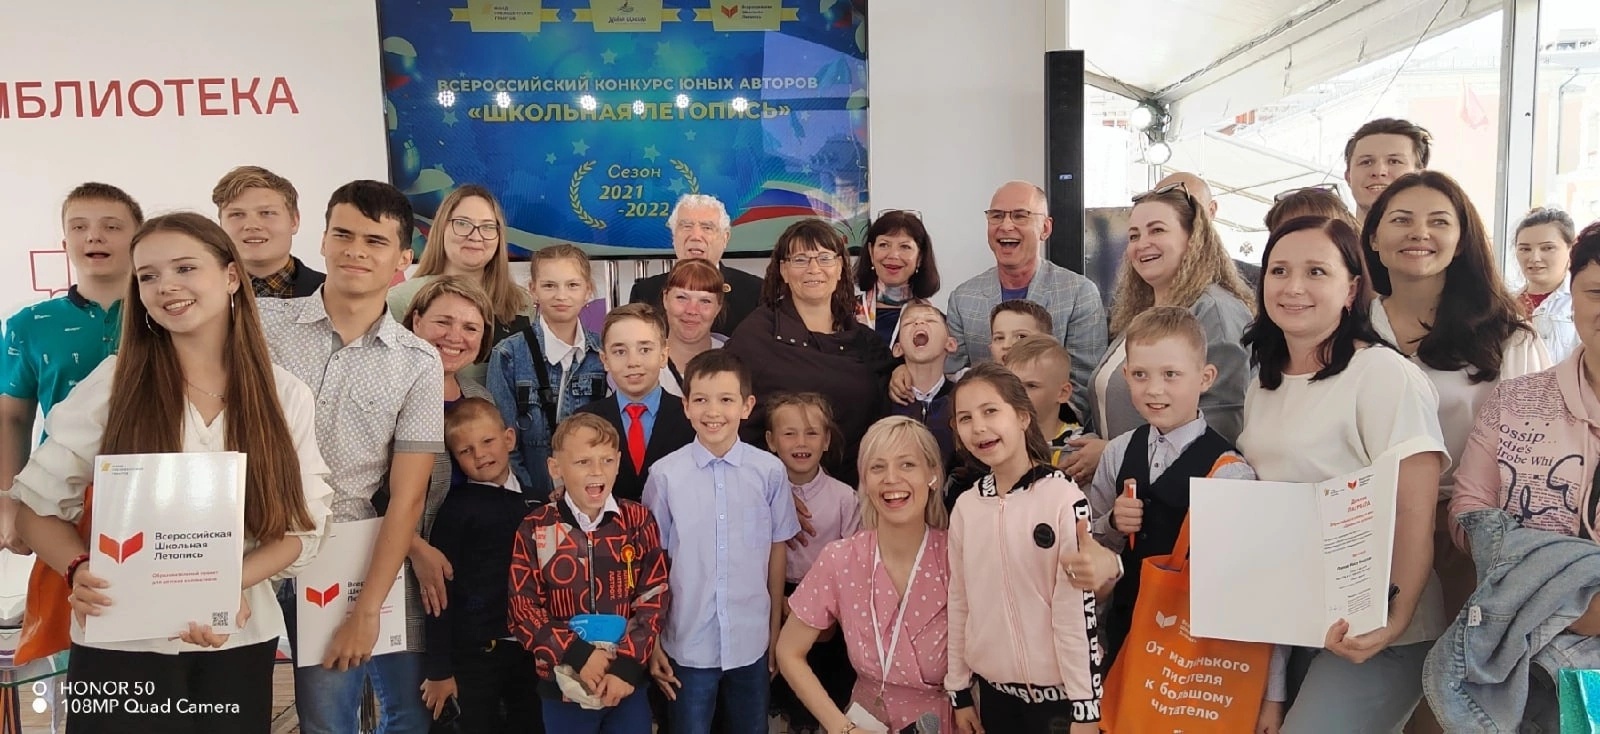 Школьники из поселка Сеща Брянской области взяли две награды конкурса «Школьная летопись»